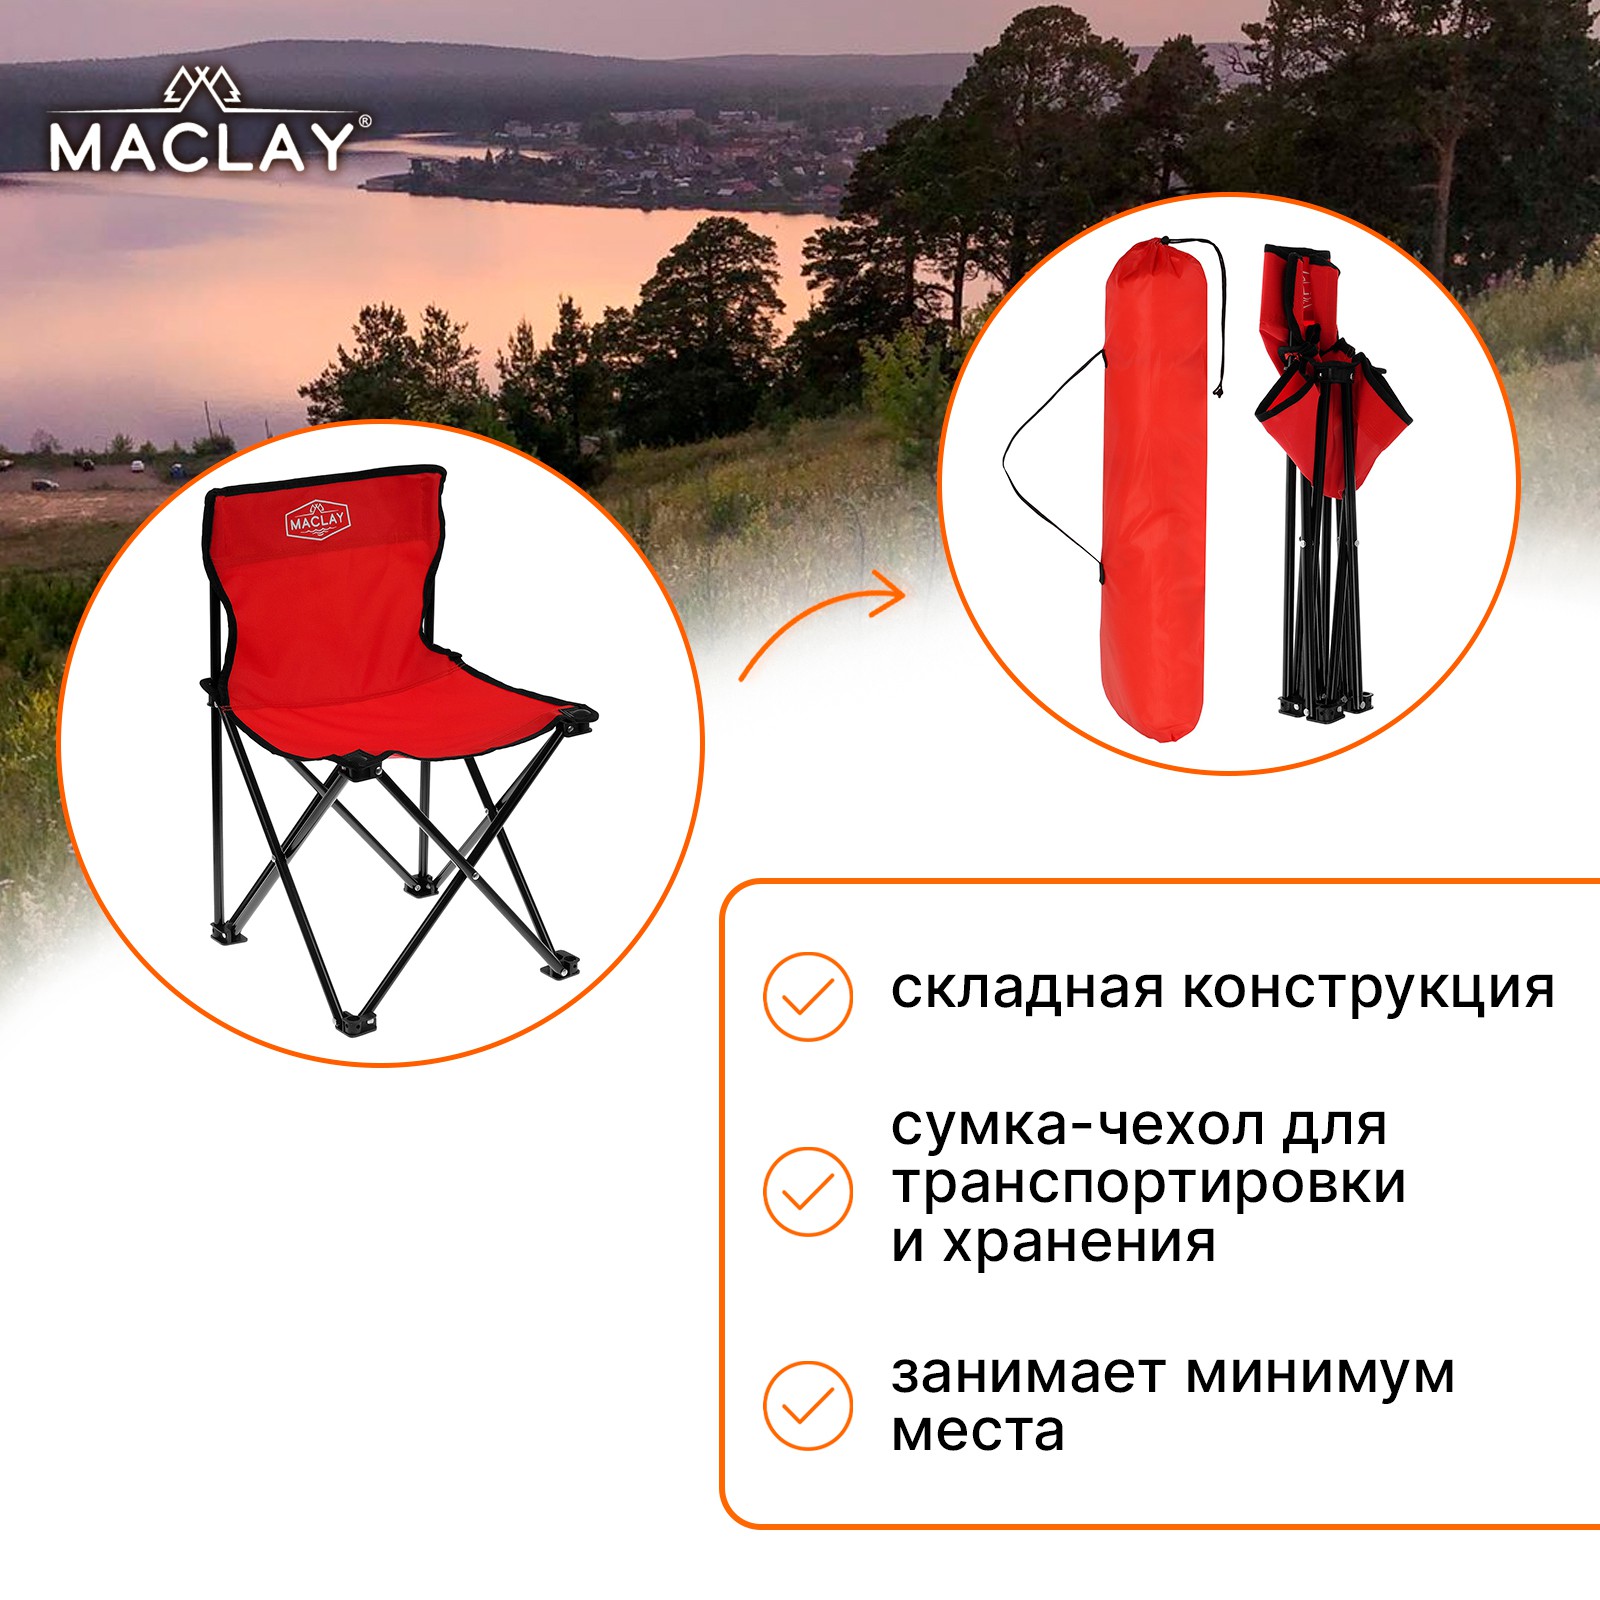 Кресло Maclay туристическое складное р. 35 х 35 х 56 см до 80 кг цвет красный - фото 1